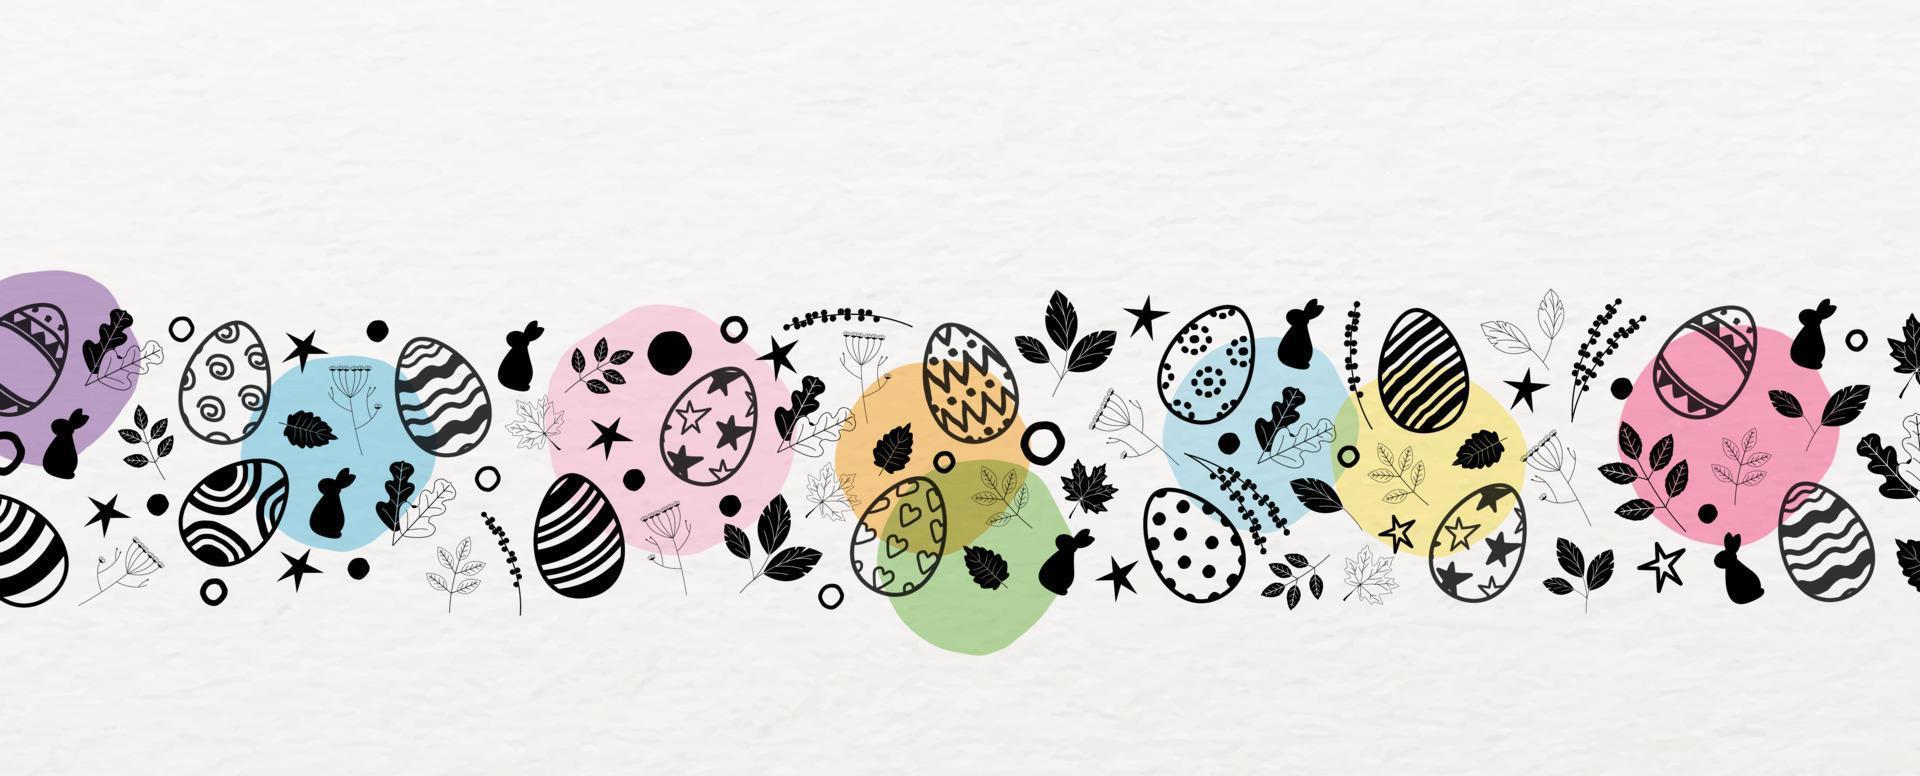 cierra y recorta los huevos de pascua con la naturaleza decorada en estilo garabato y puntos coloridos en el fondo del patrón de papel blanco. vector